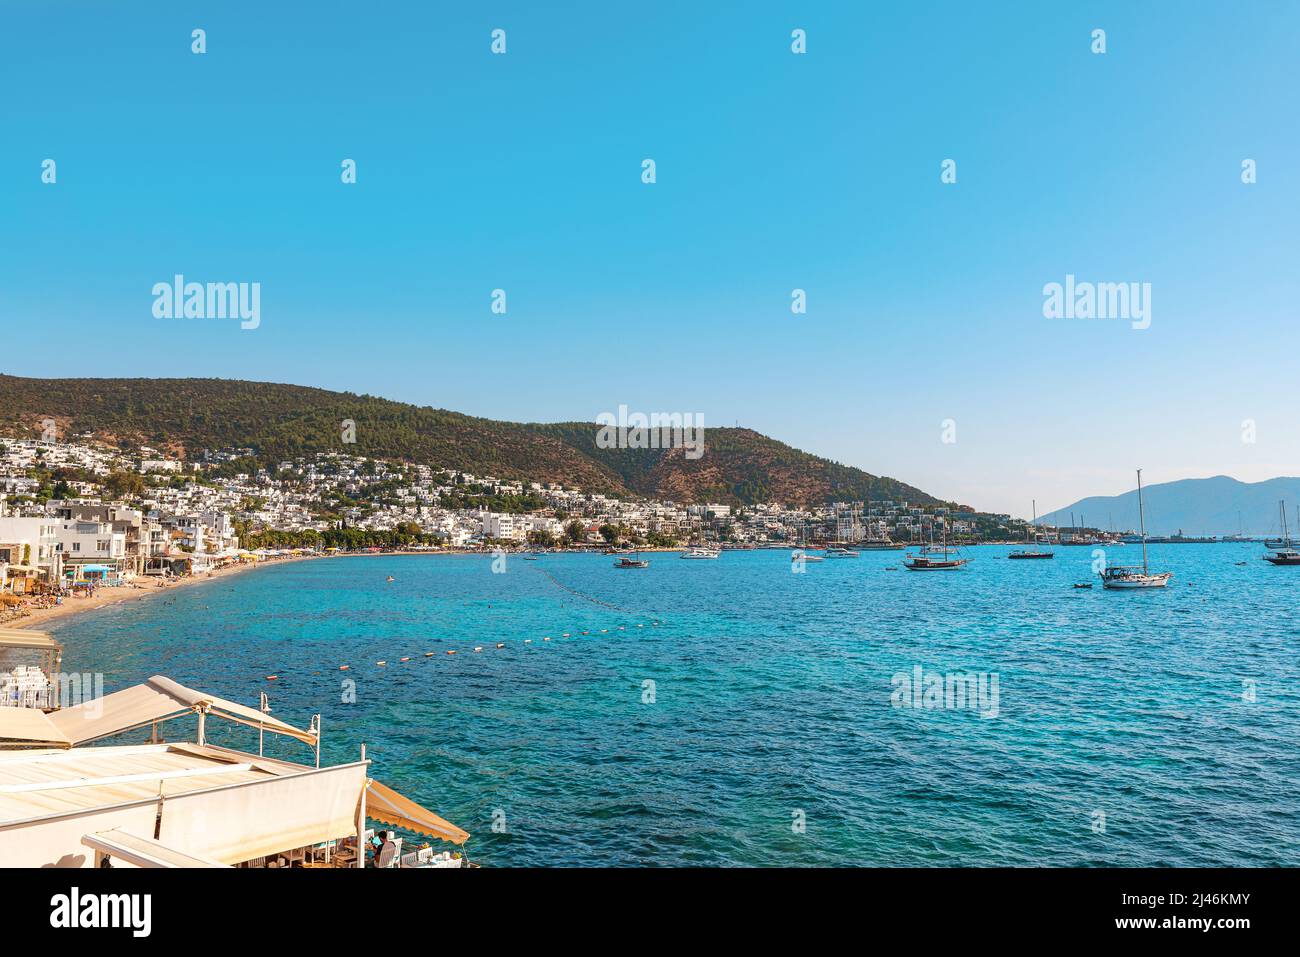 Blick auf den Strand und die Bucht von Bodrum mit Yachten an sonnigen Tagen, die Provinz Mugla, die Türkei, die Ägäis. Beliebtes touristisches Sommerziel in der Türkei Stockfoto